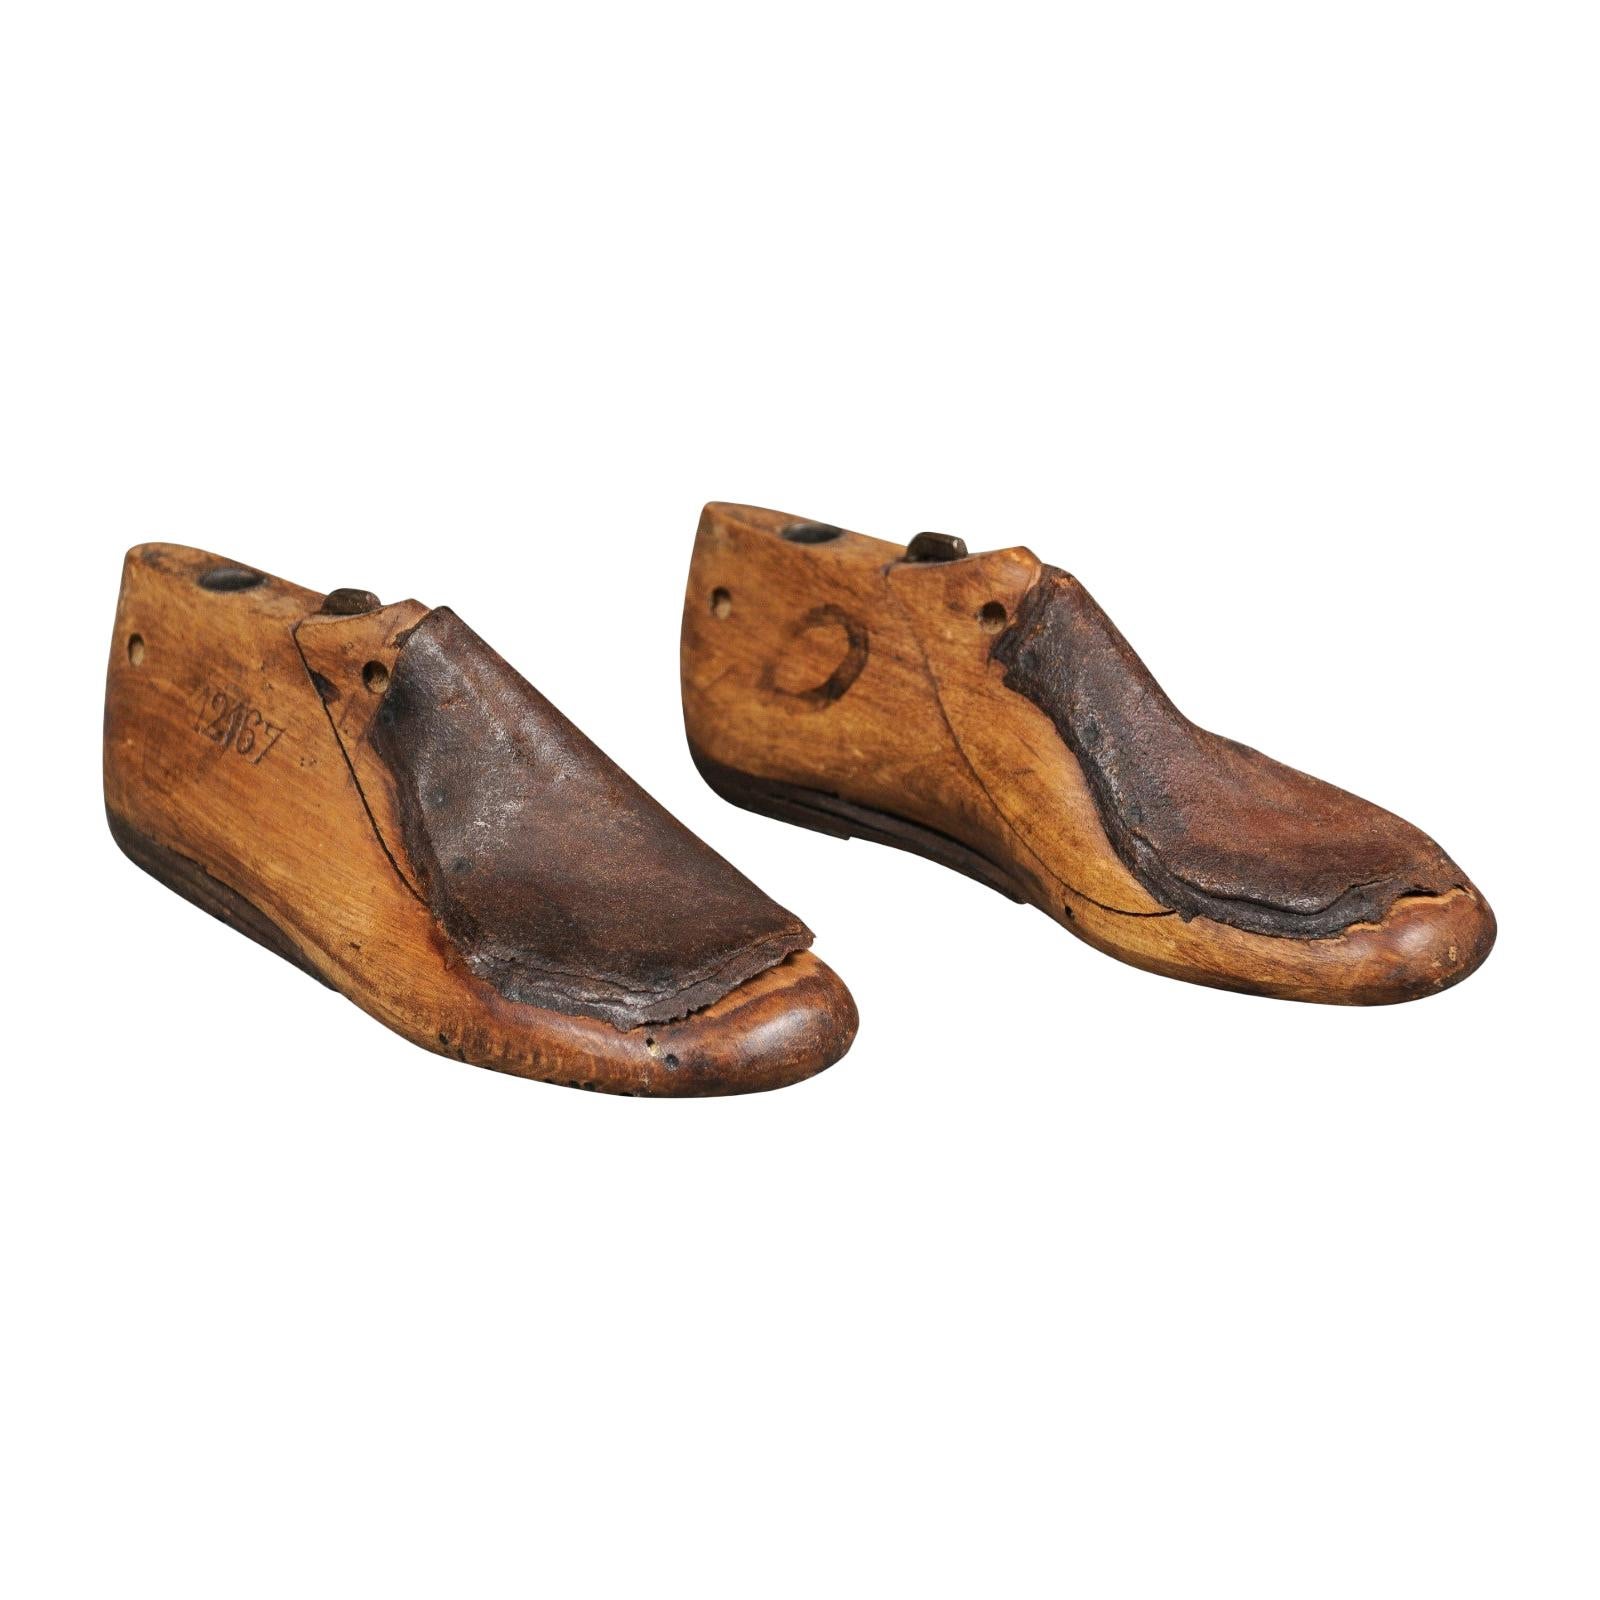 antique shoe last wooden cobbler's shoe form